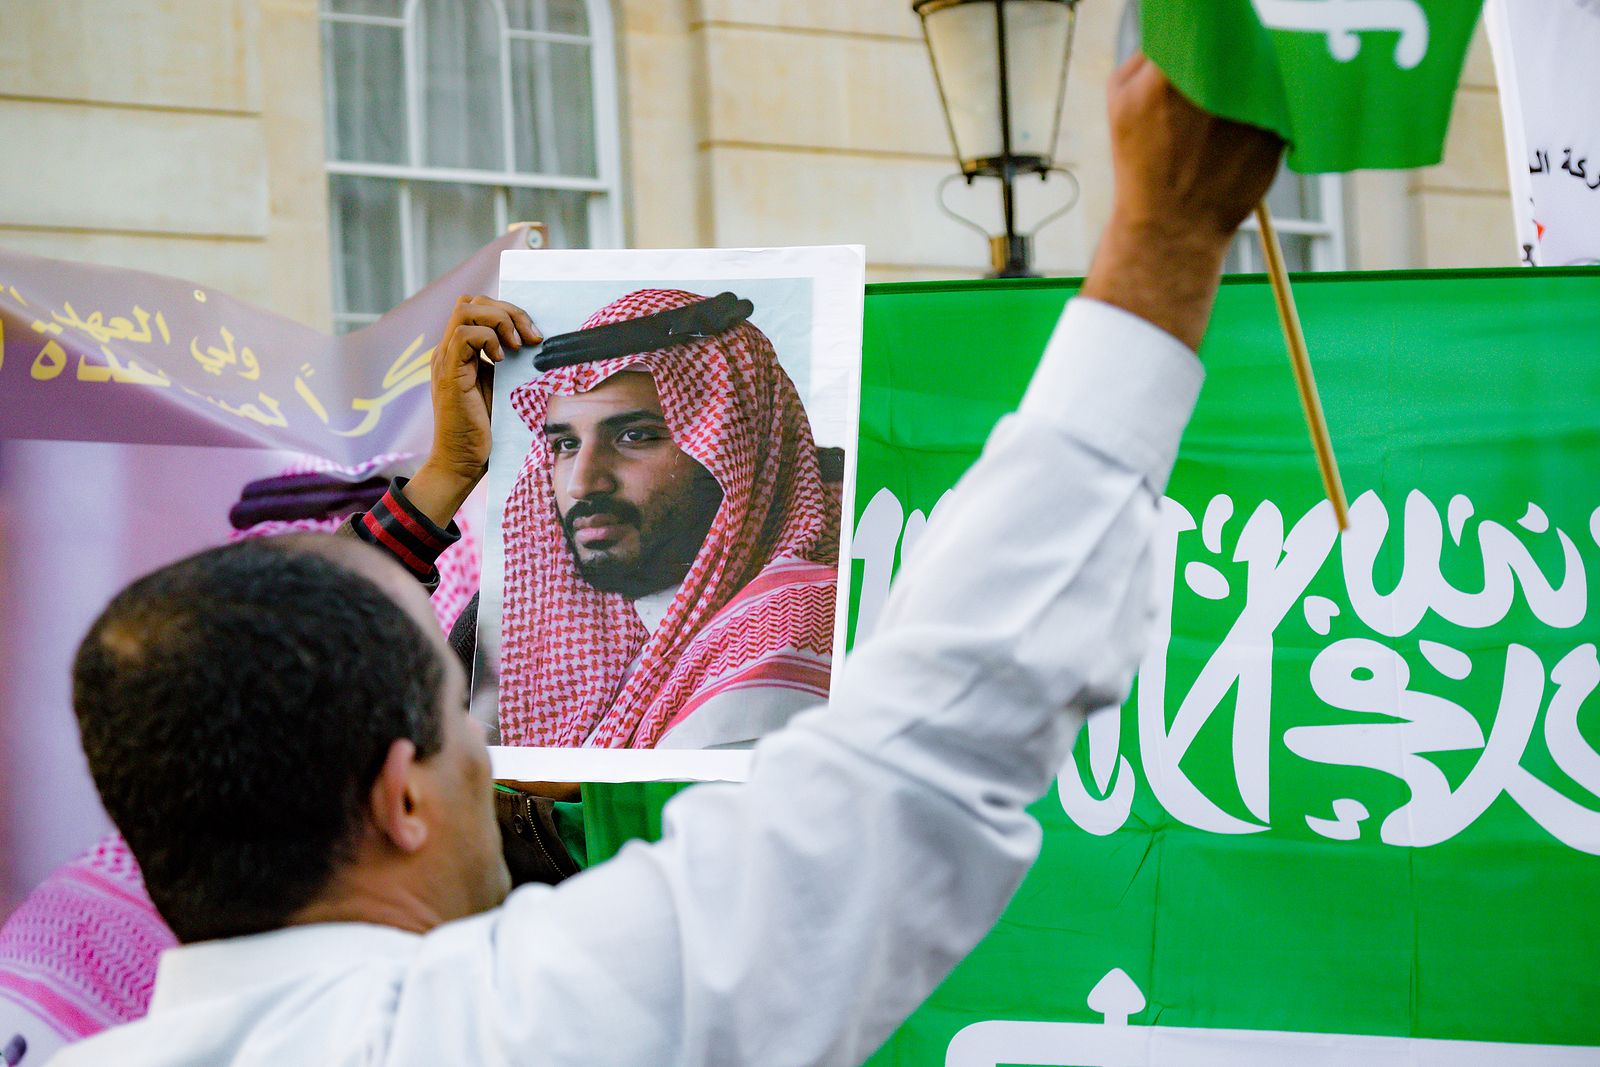 Condenado a muerte un profesor jubilado en Arabia Saudí por criticar al rey en redes sociales. Bigstock